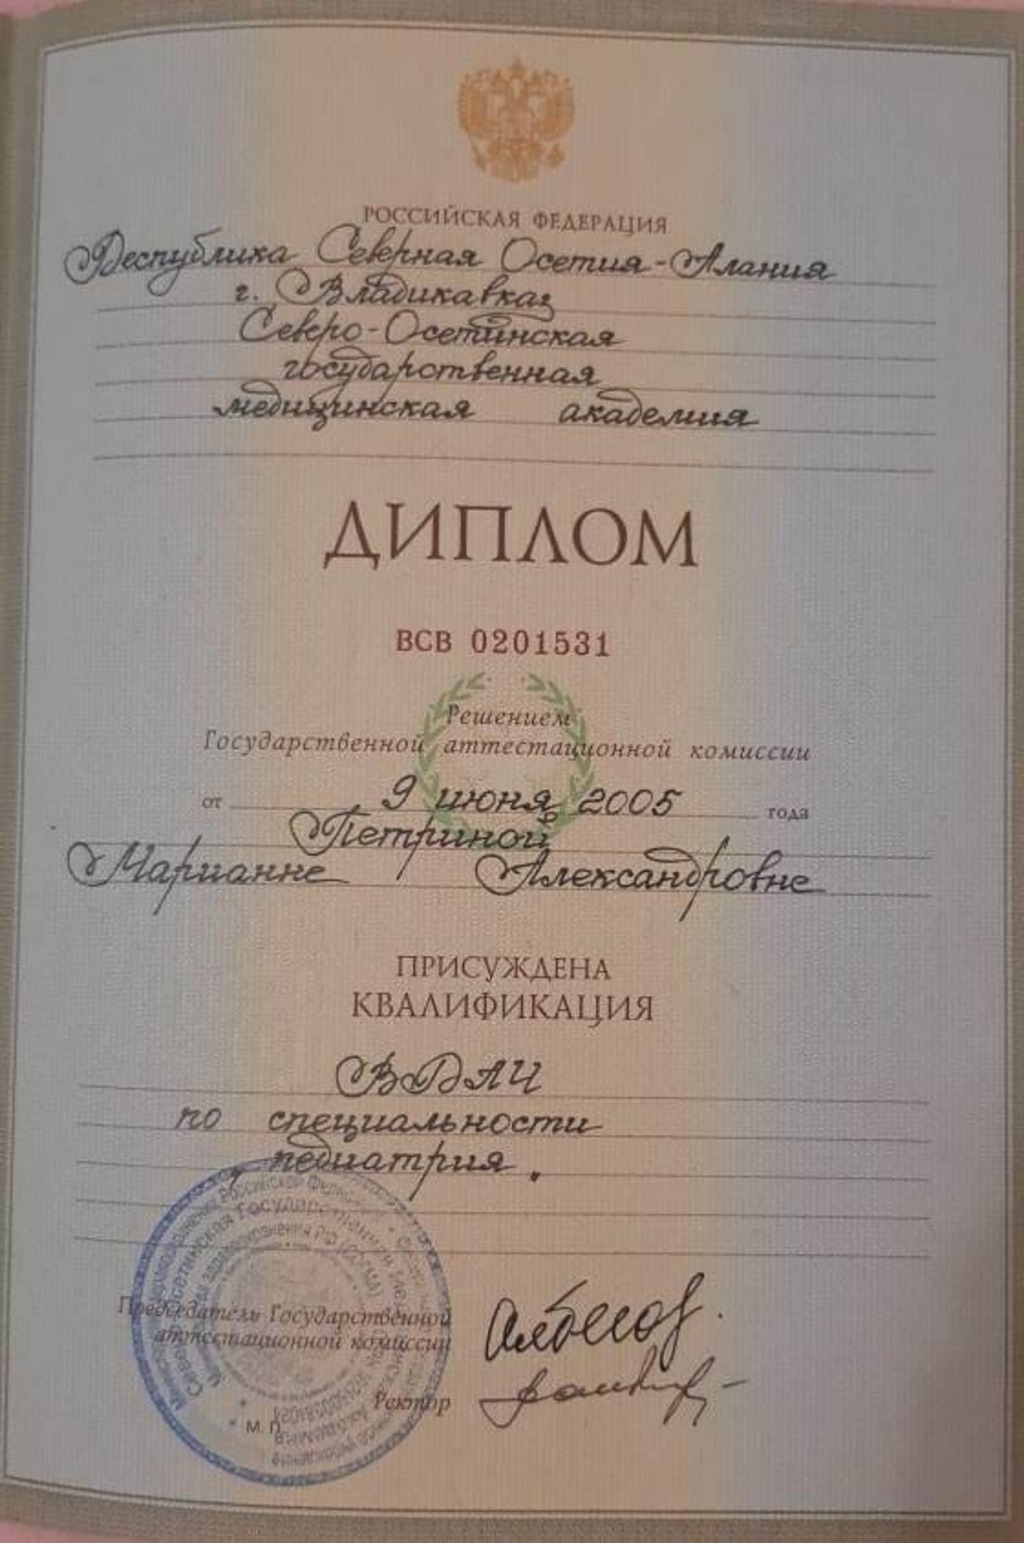 Документ подтверждающий что Марианна Александровна Нагорная получил(а) диплом профильного образования по специальности педиатрия